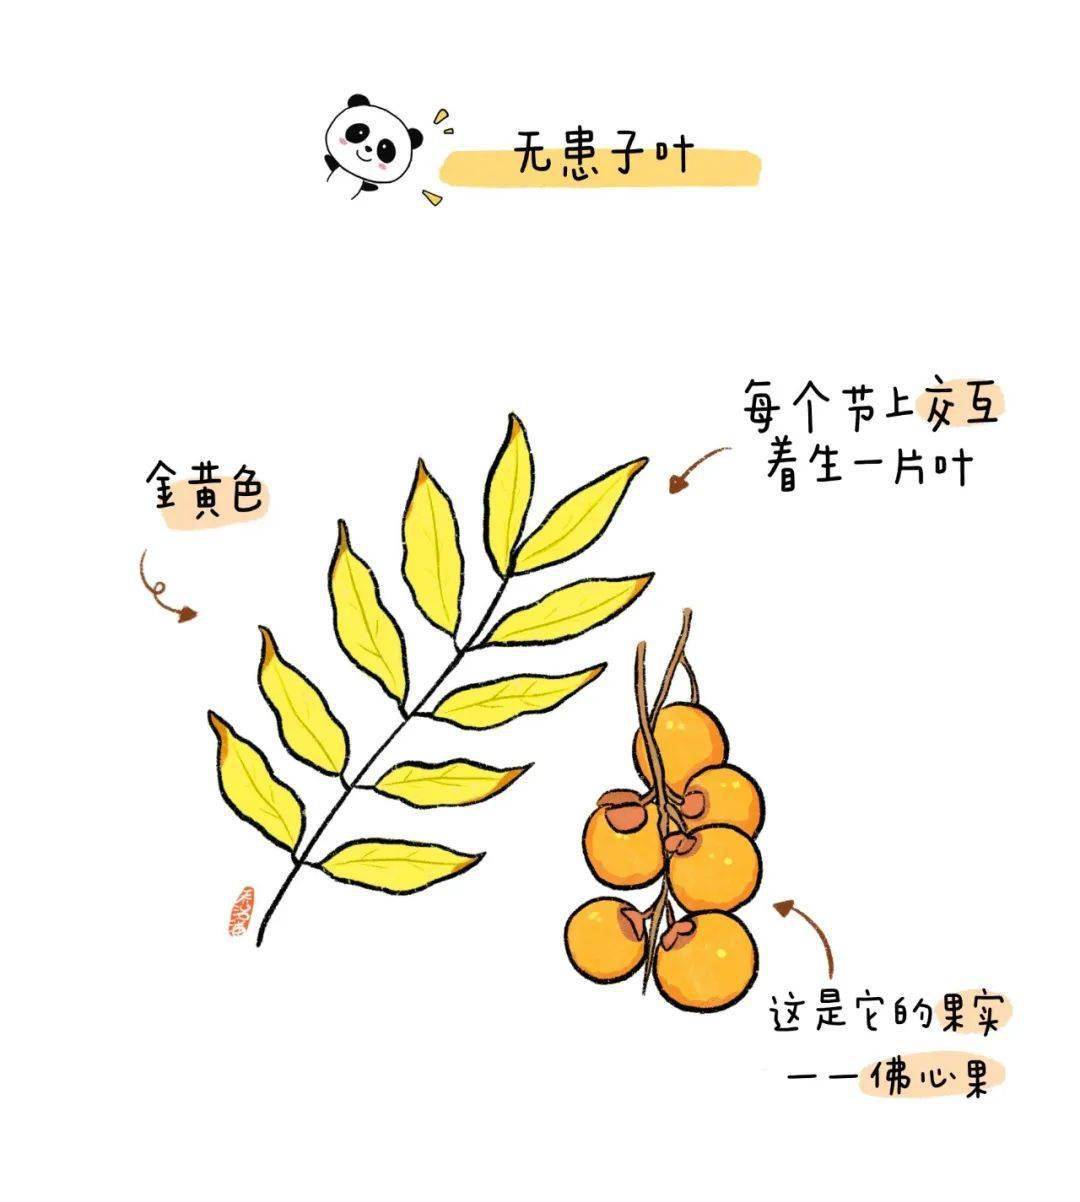 小知识无患子因为秋季树叶金黄又被称为黄金树它的果皮含有皂素因此